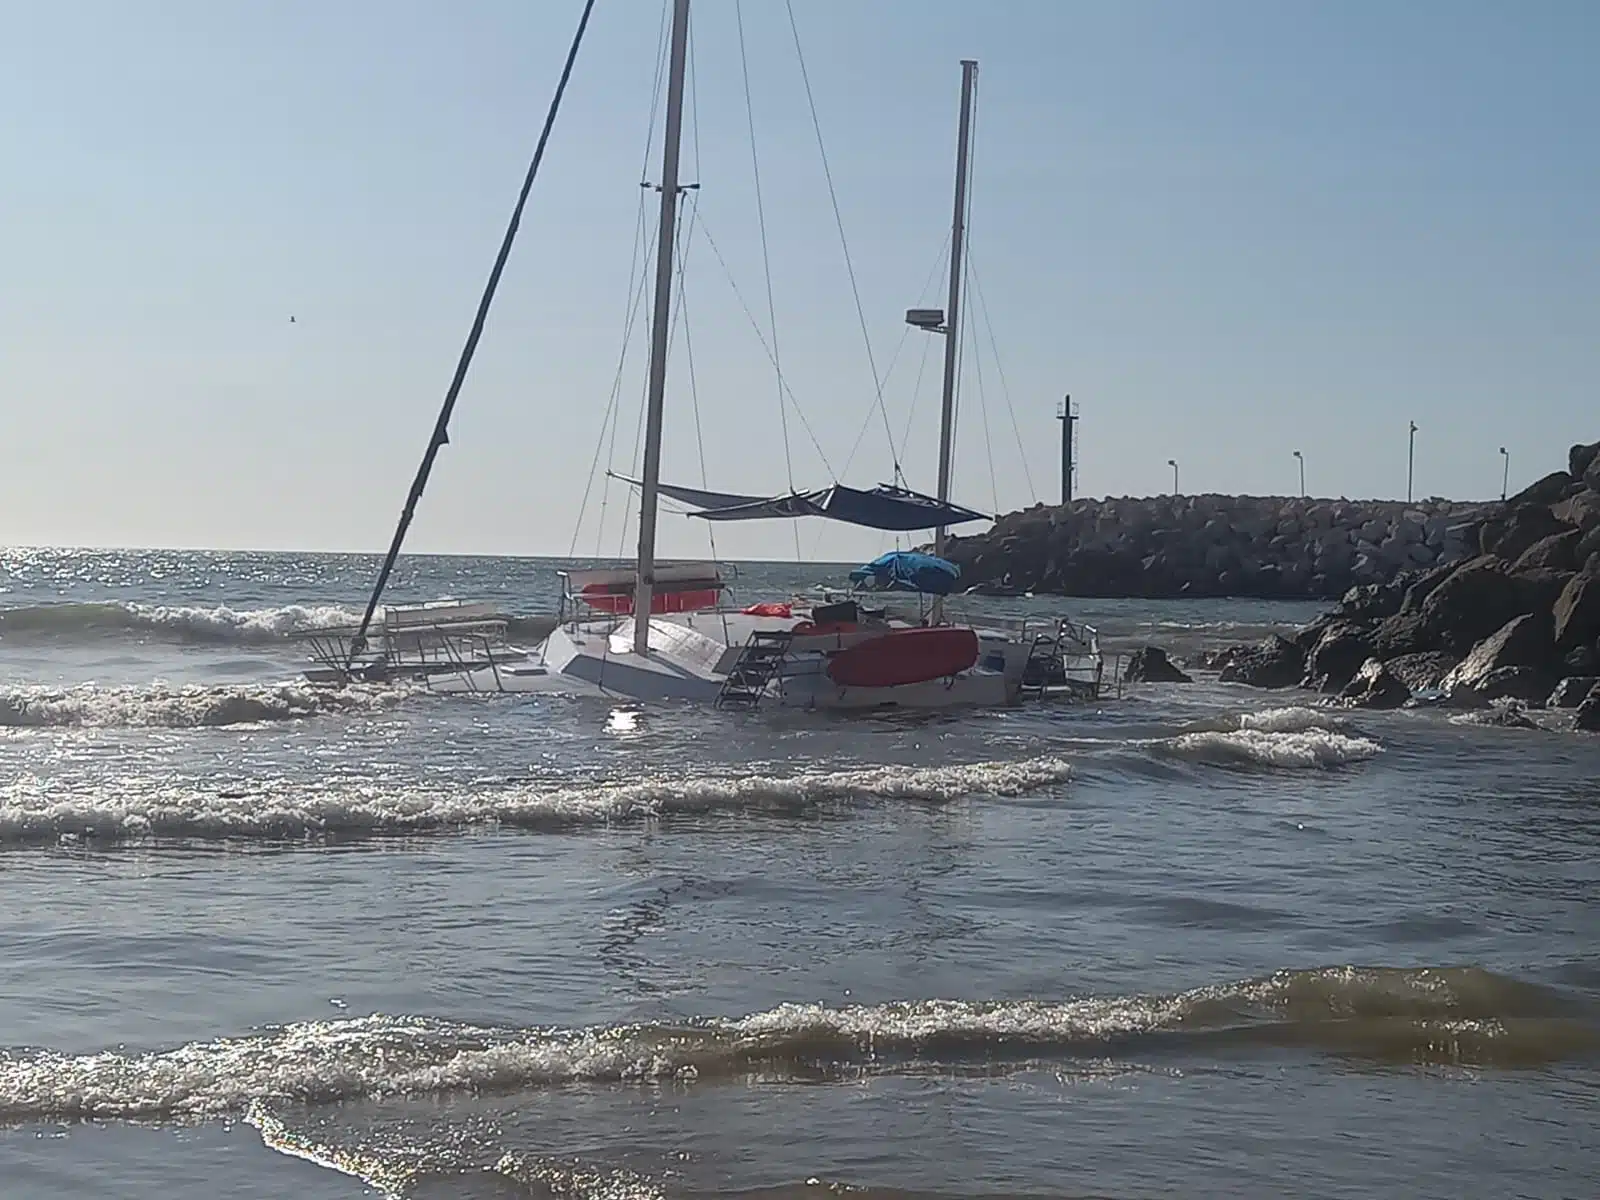 Catamarán a la deriva en el mar de Mazatlán por una falla mecánica